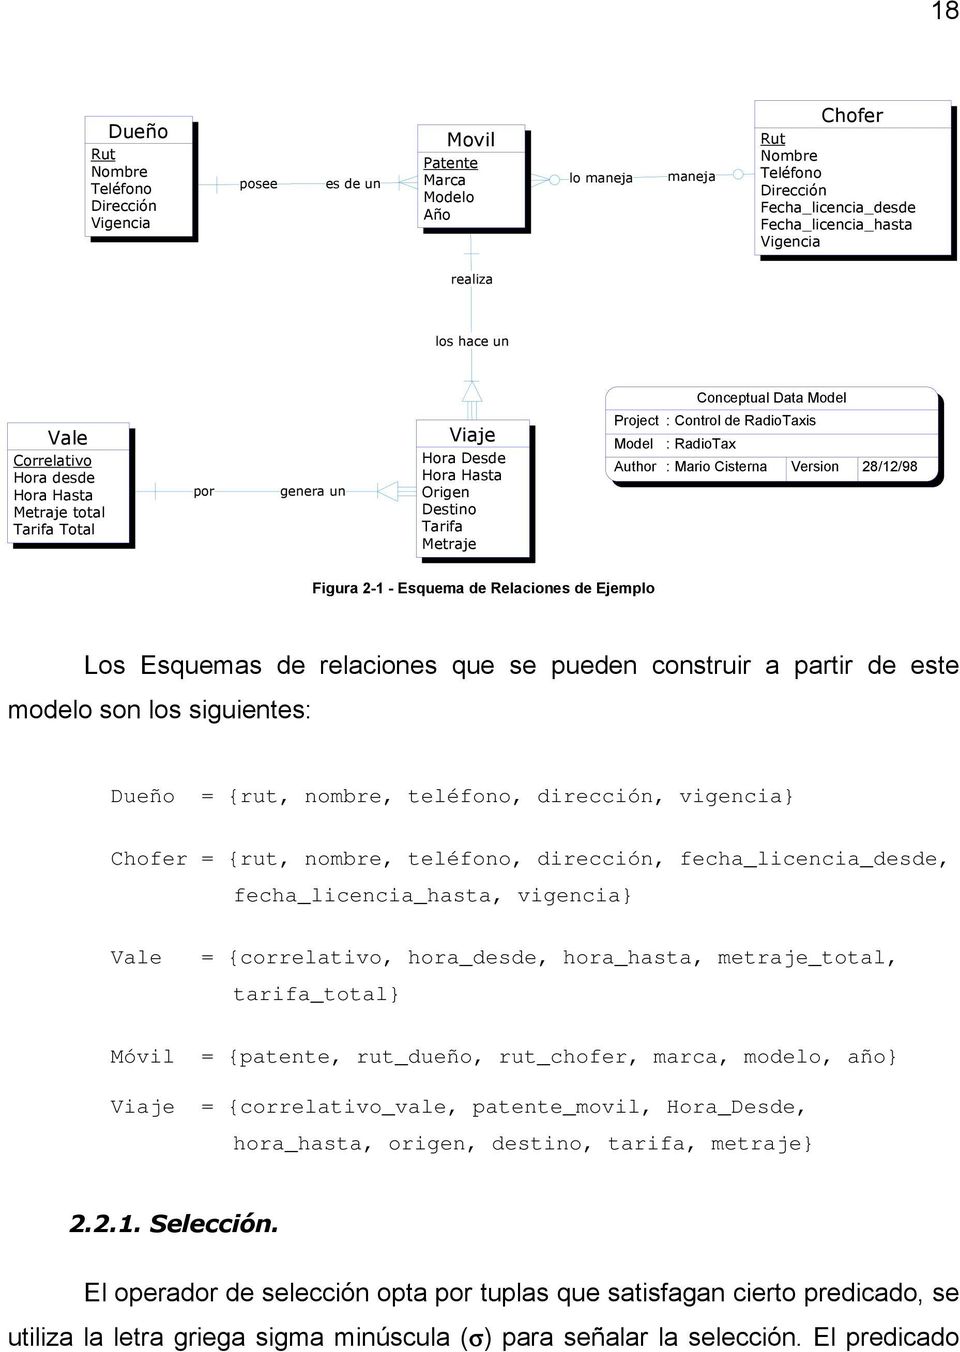 de RadioTaxis Model : RadioTax Author : Mario Cisterna Version 28/12/98 Figura 2-1 - Esquema de Relaciones de Ejemplo Los Esquemas de relaciones que se pueden construir a partir de este modelo son